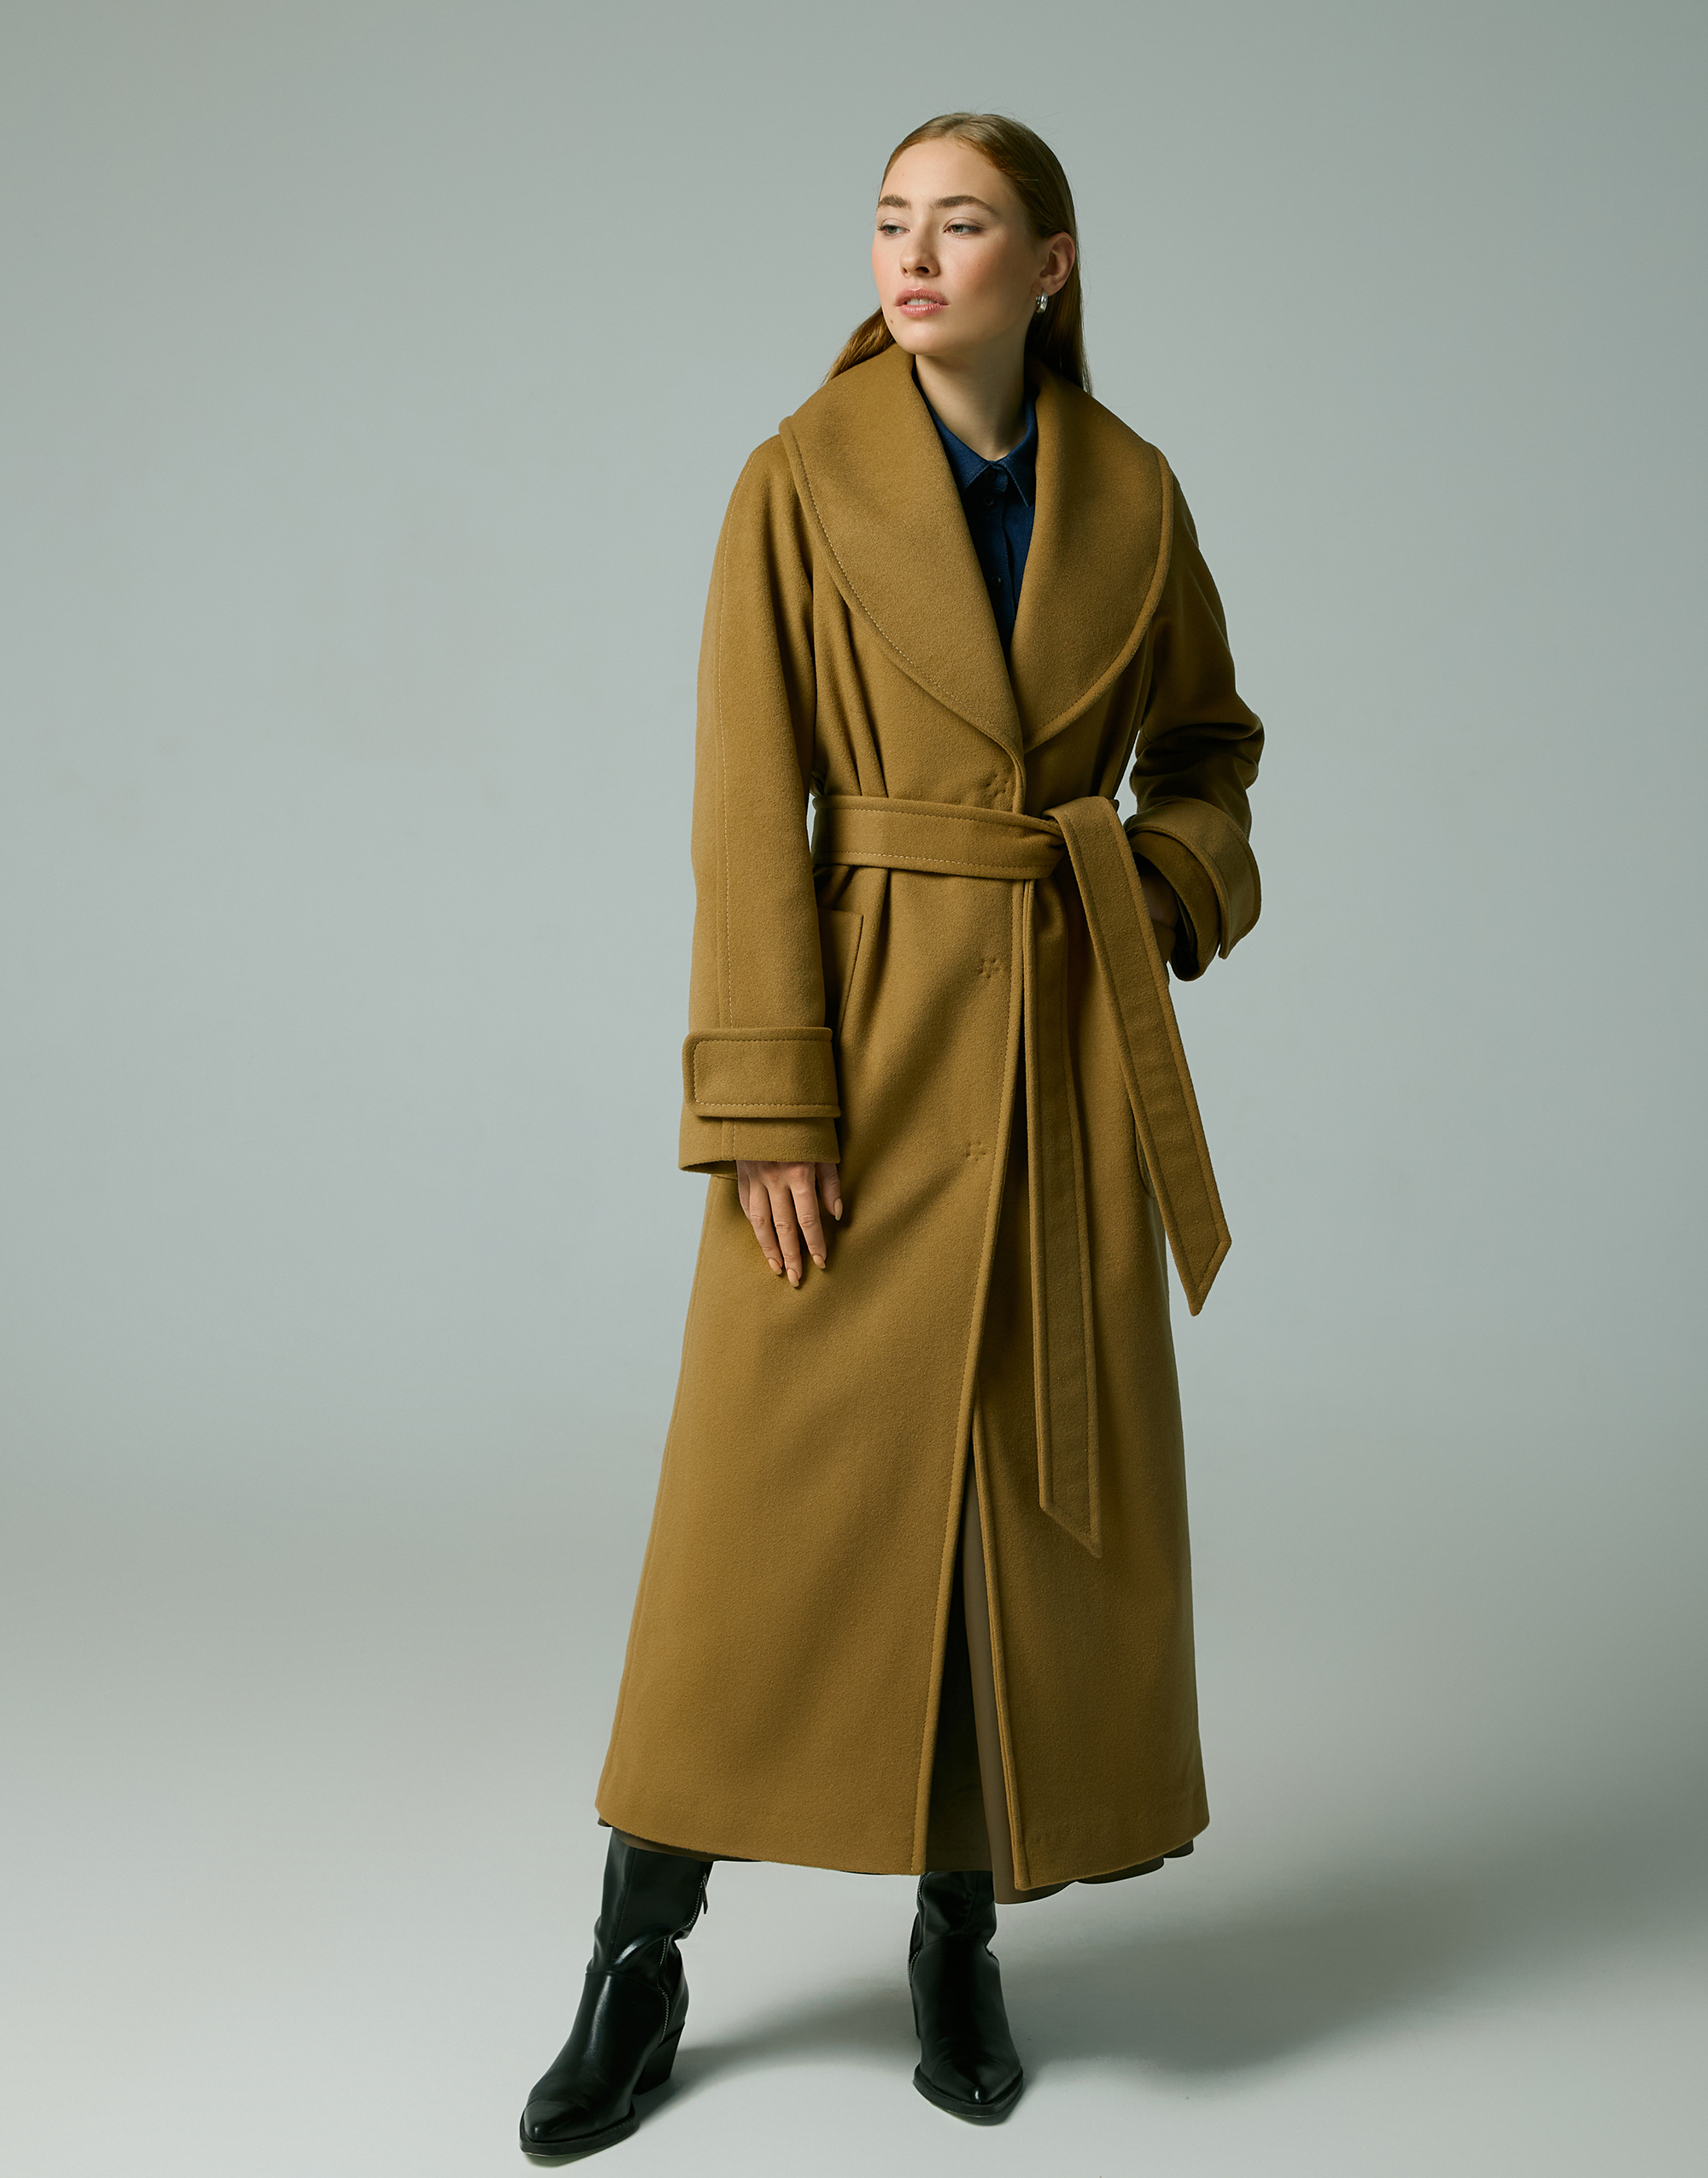 Coat, pattern №866